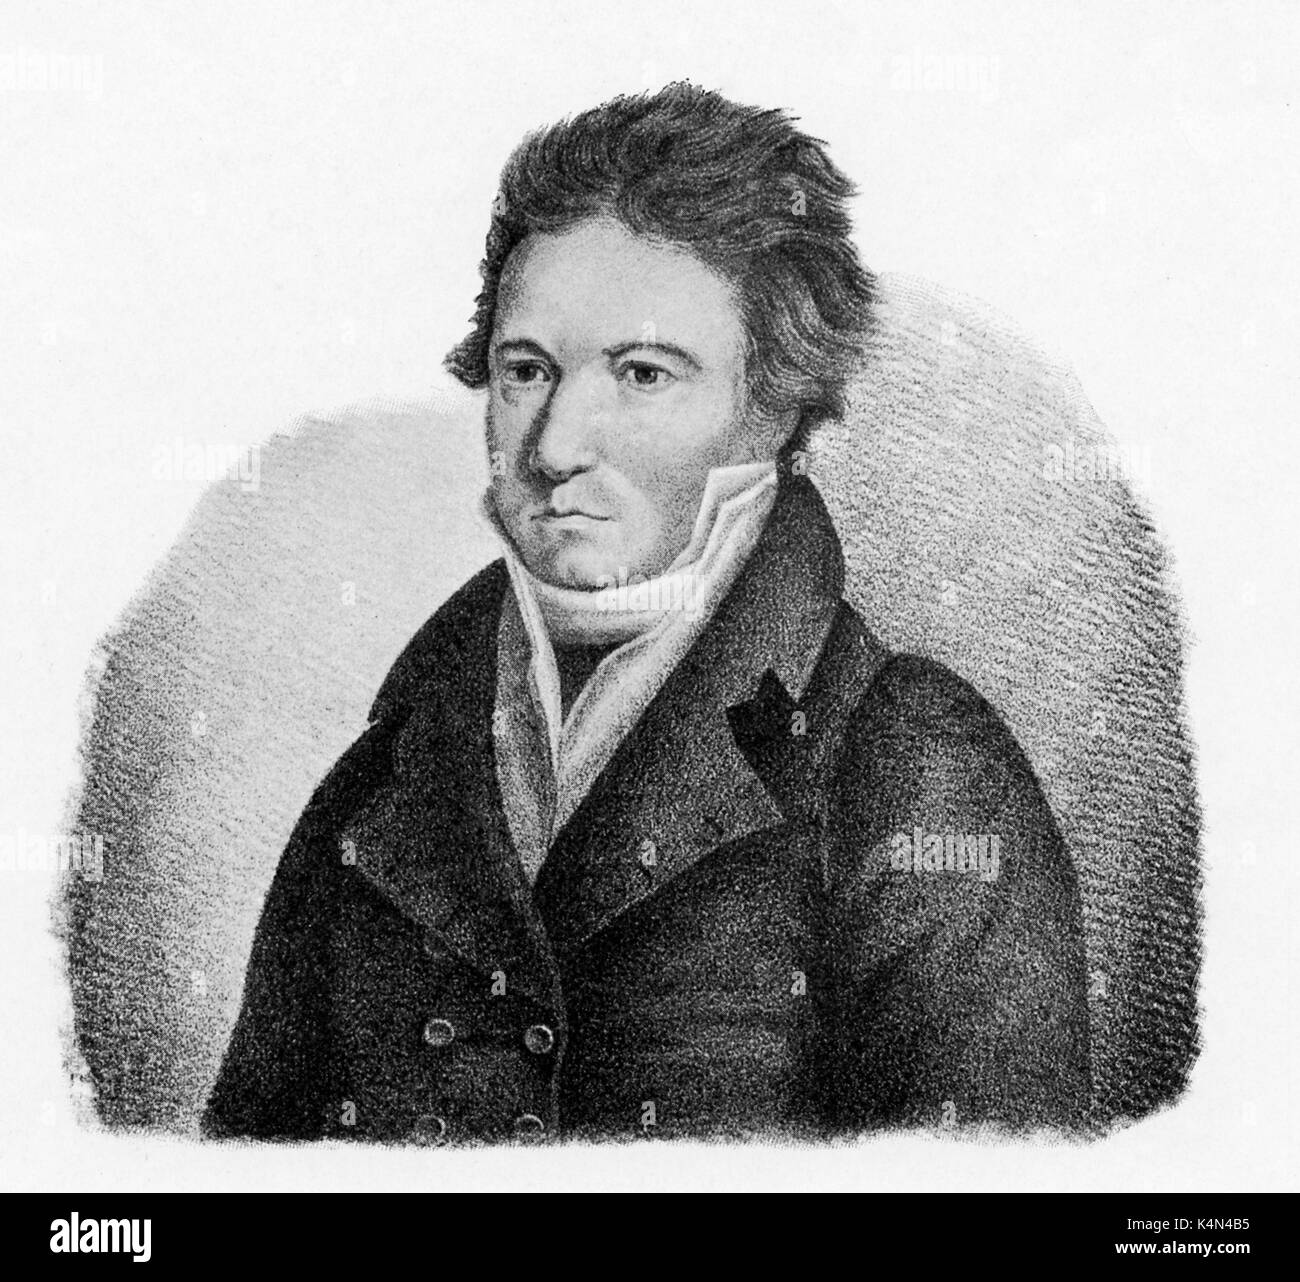 Ludwig van Beethoven après peinture par CH Heckel en 1815. Compositeur allemand, 1770-1 827 Banque D'Images